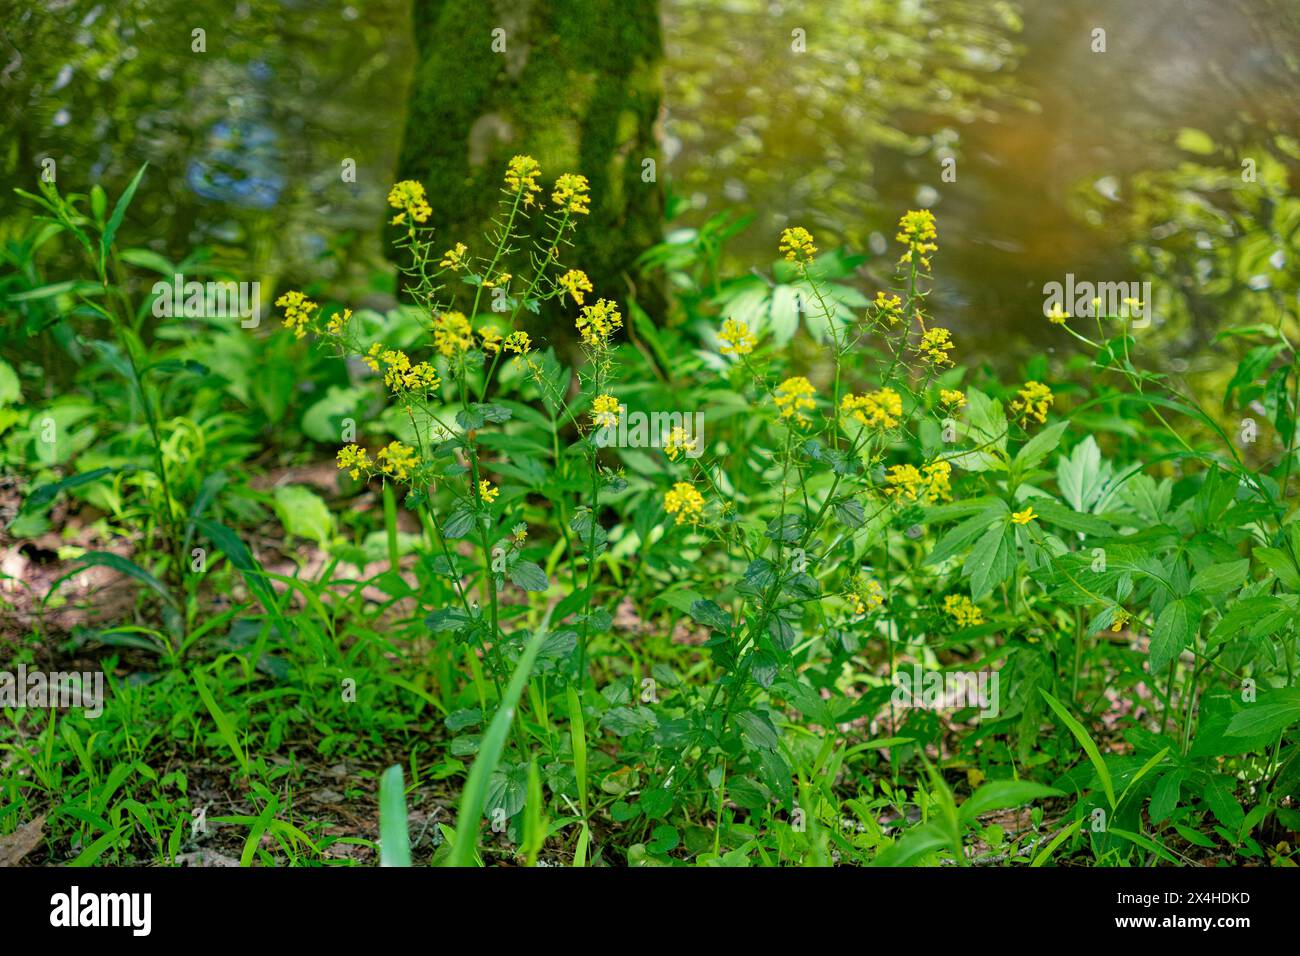 Rucola gialla o crescione invernale in fiore con piccoli gruppi di fiori gialli su uno stelo che cresce lungo il torrente mescolati con altre vegetazione selvaggia c Foto Stock